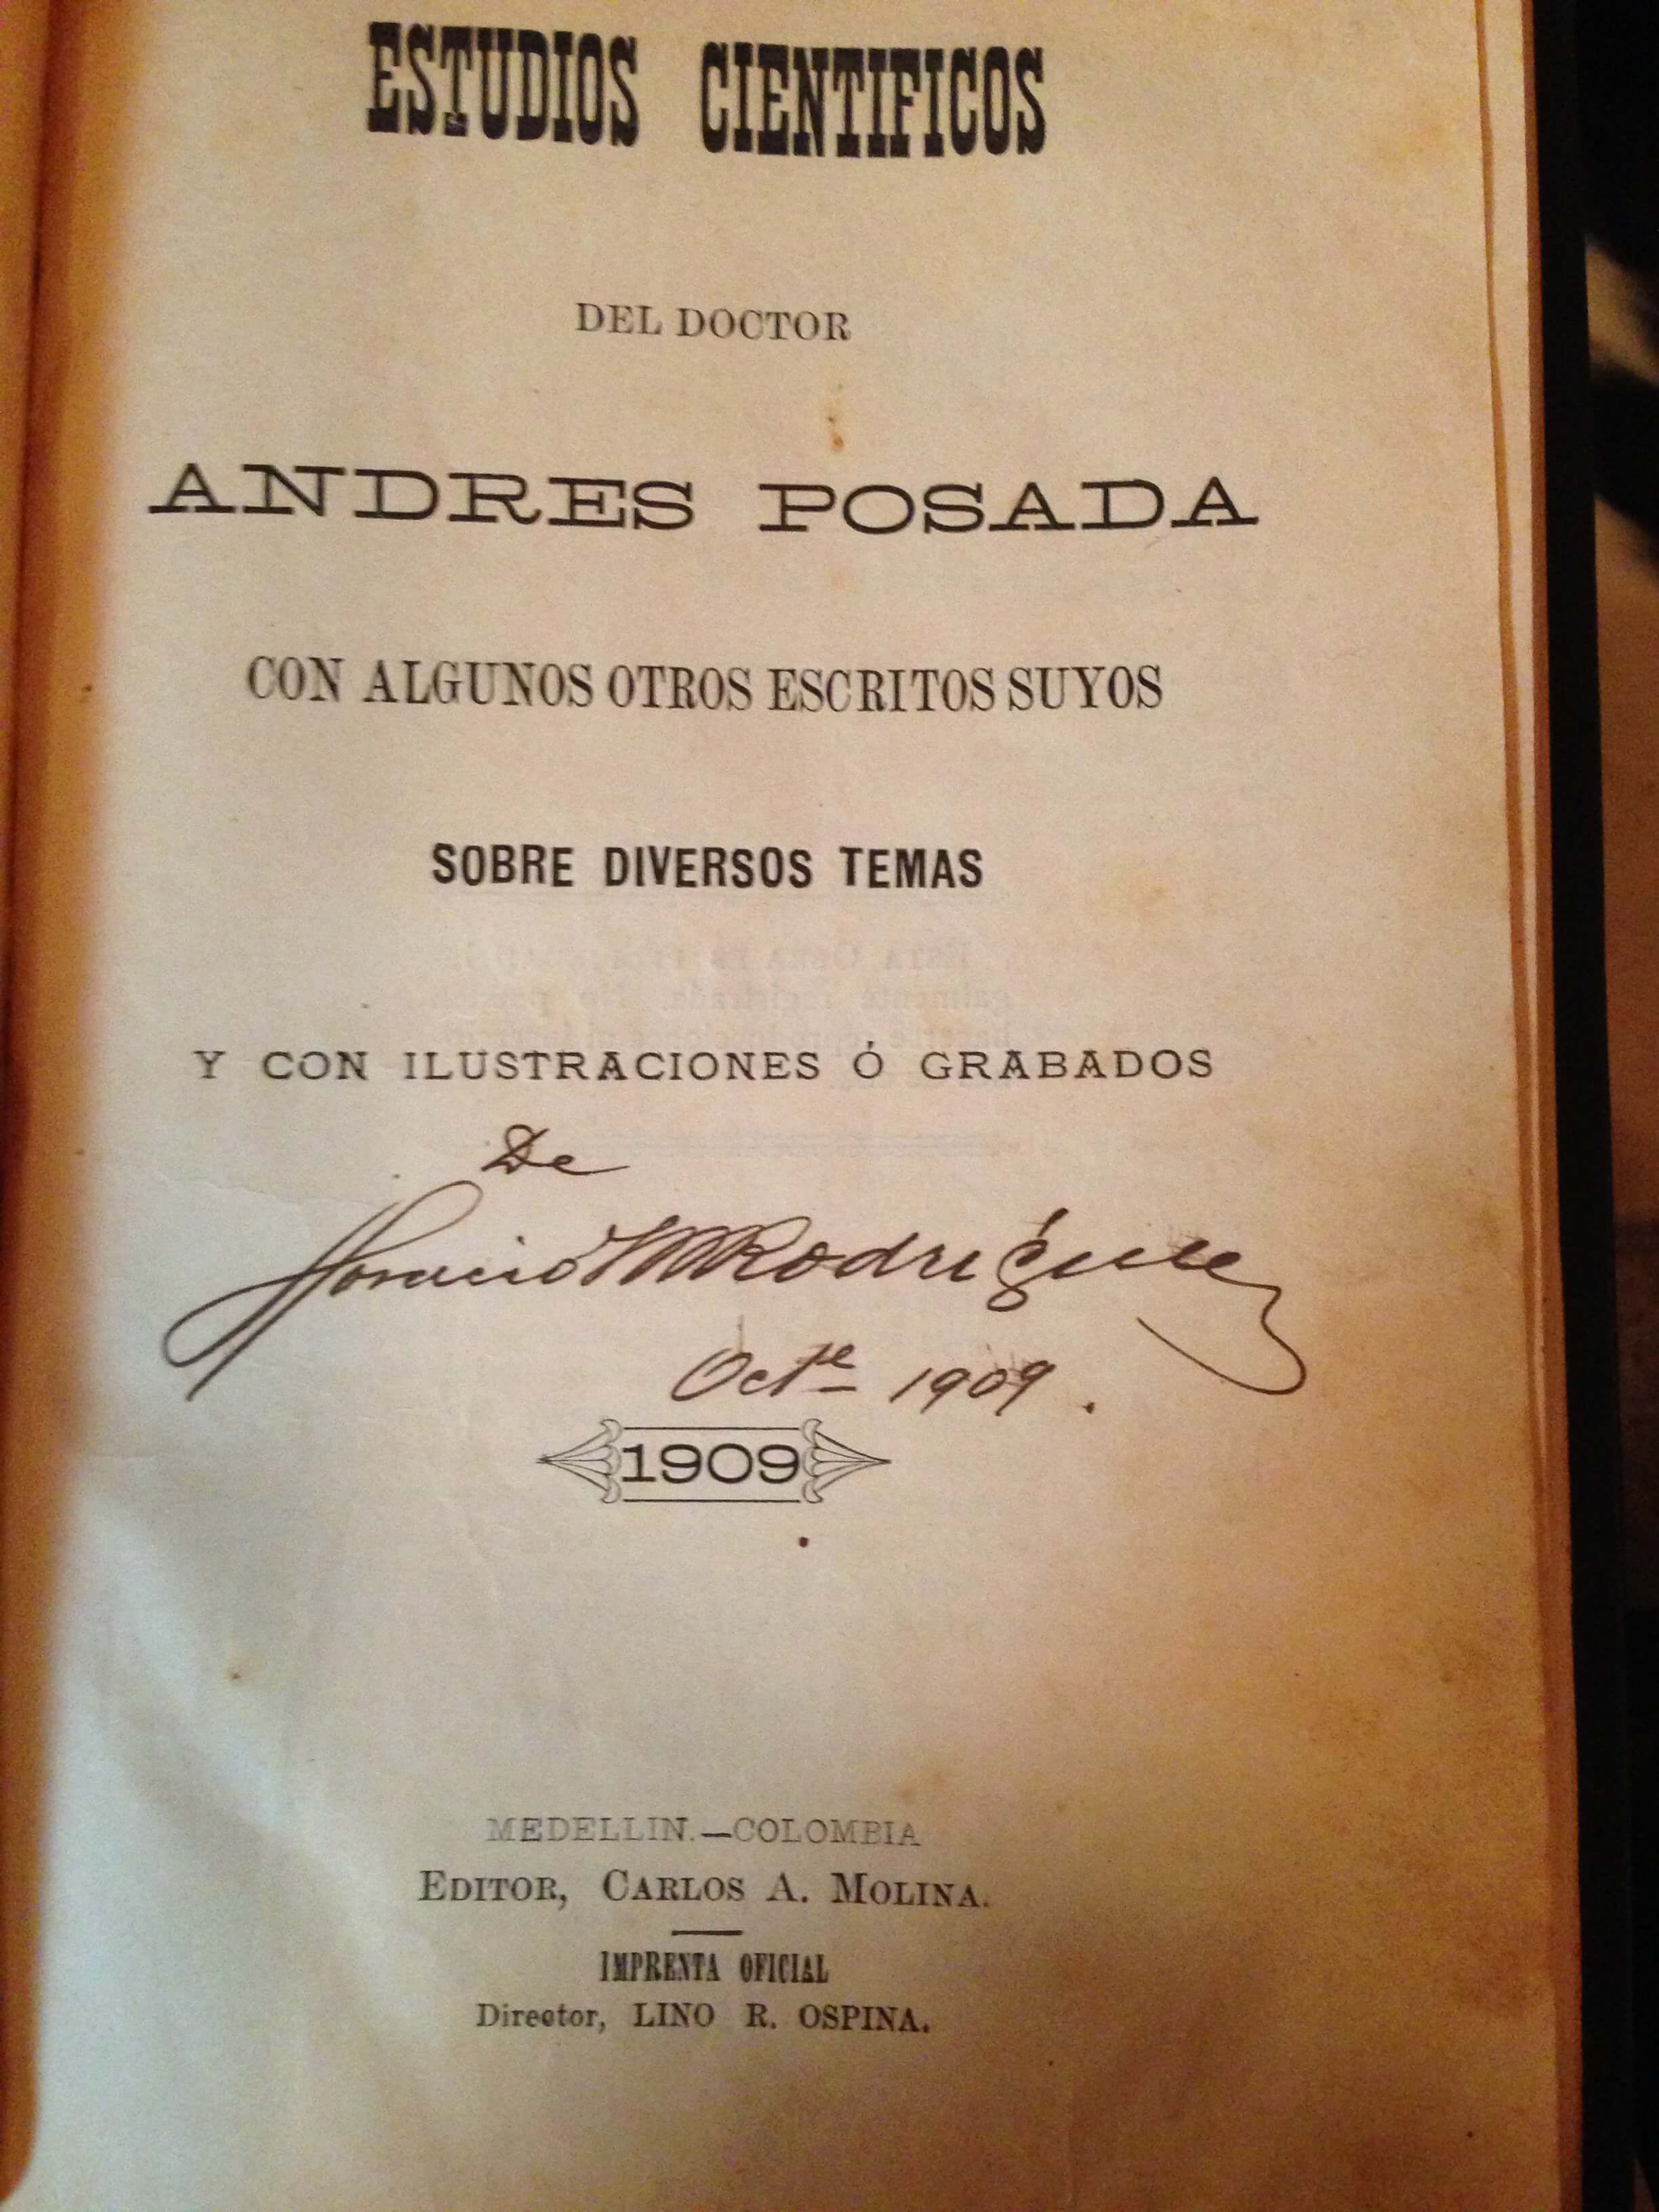 Pagina 2 del Libro Estudios Cientificos del Dr. Andres Posada.